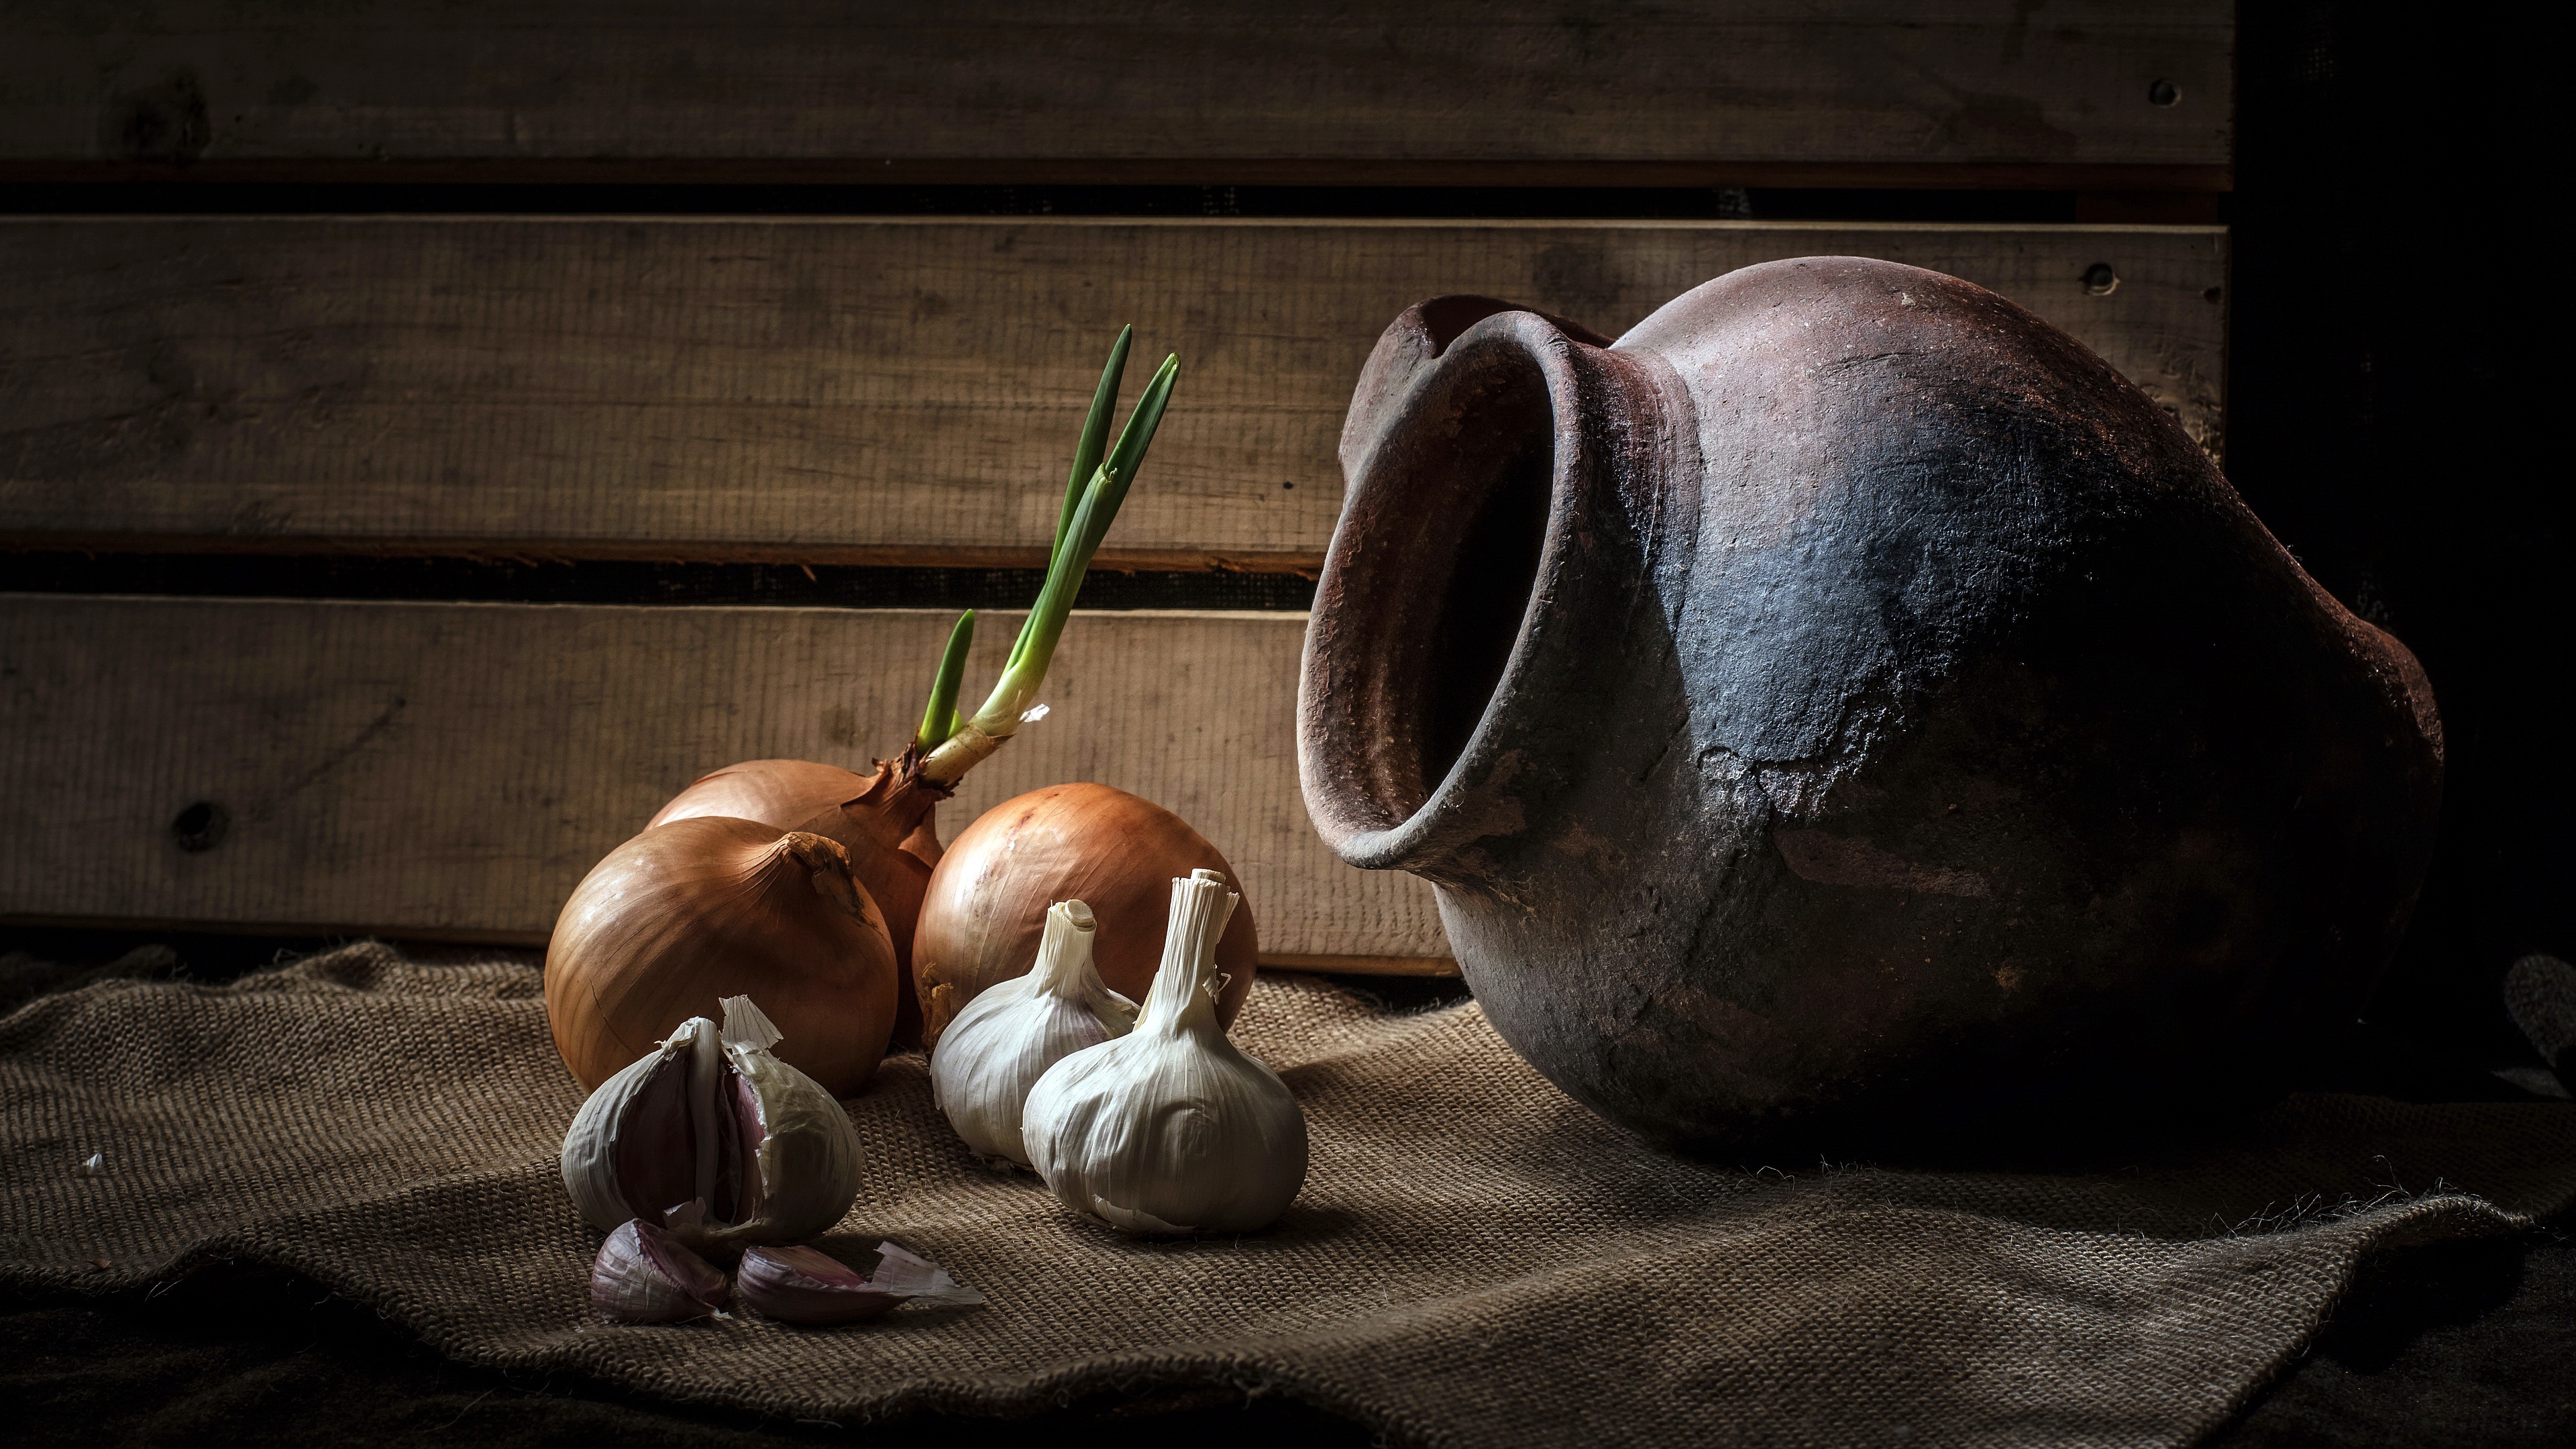 food, still life, garlic, jug, onion wallpaper for mobile